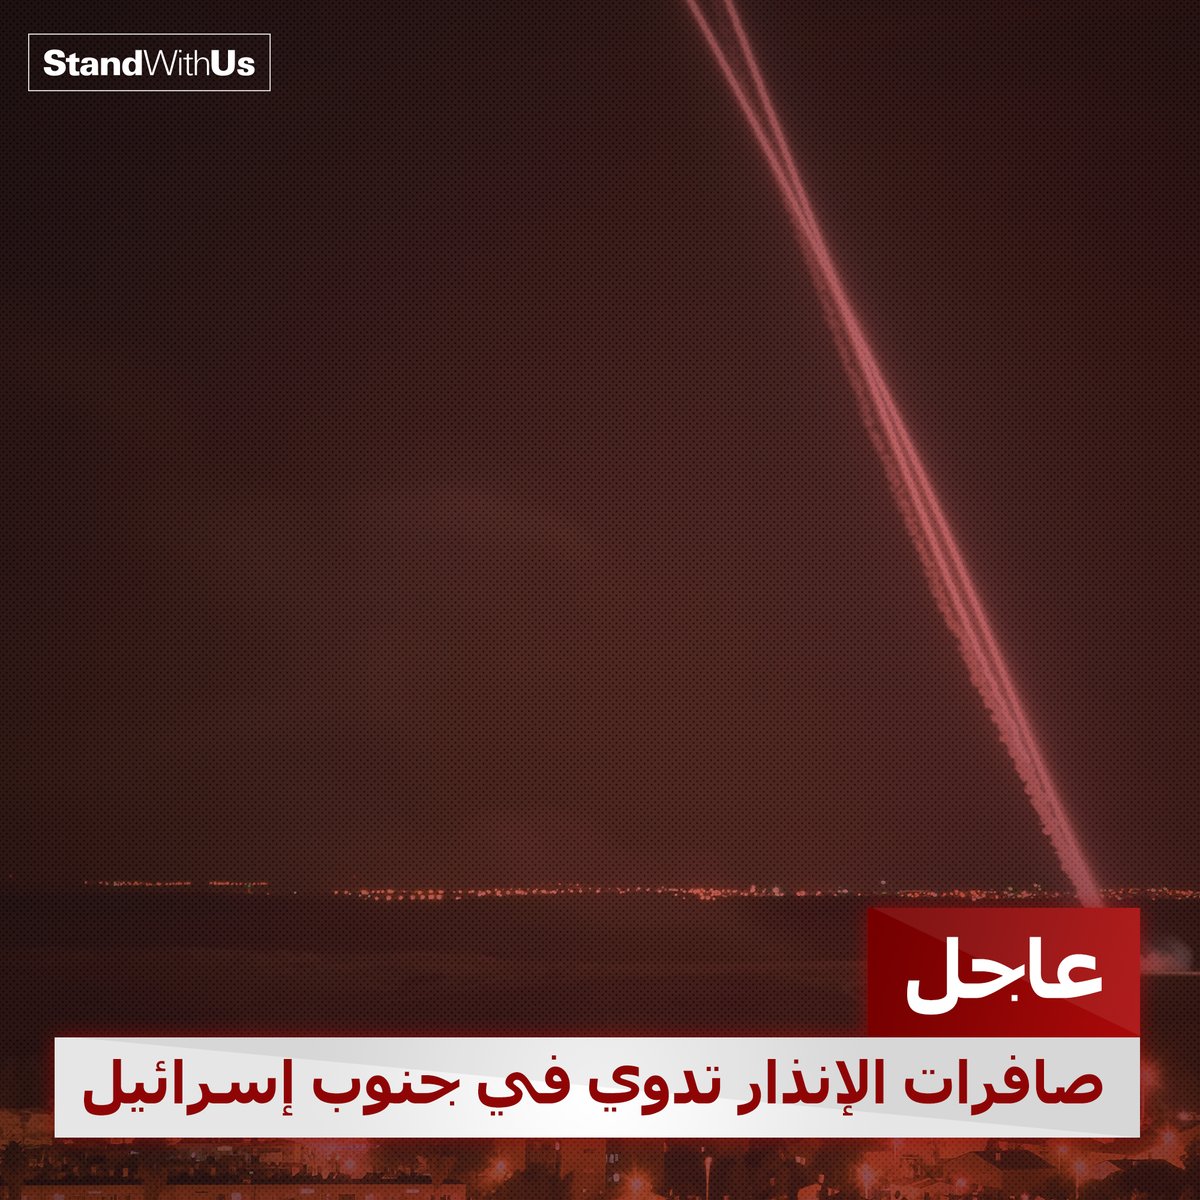 عاجل: إطلاق وابل من الصواريخ الإرهابية من قطاع غزة على جنوب إسرائيل. …